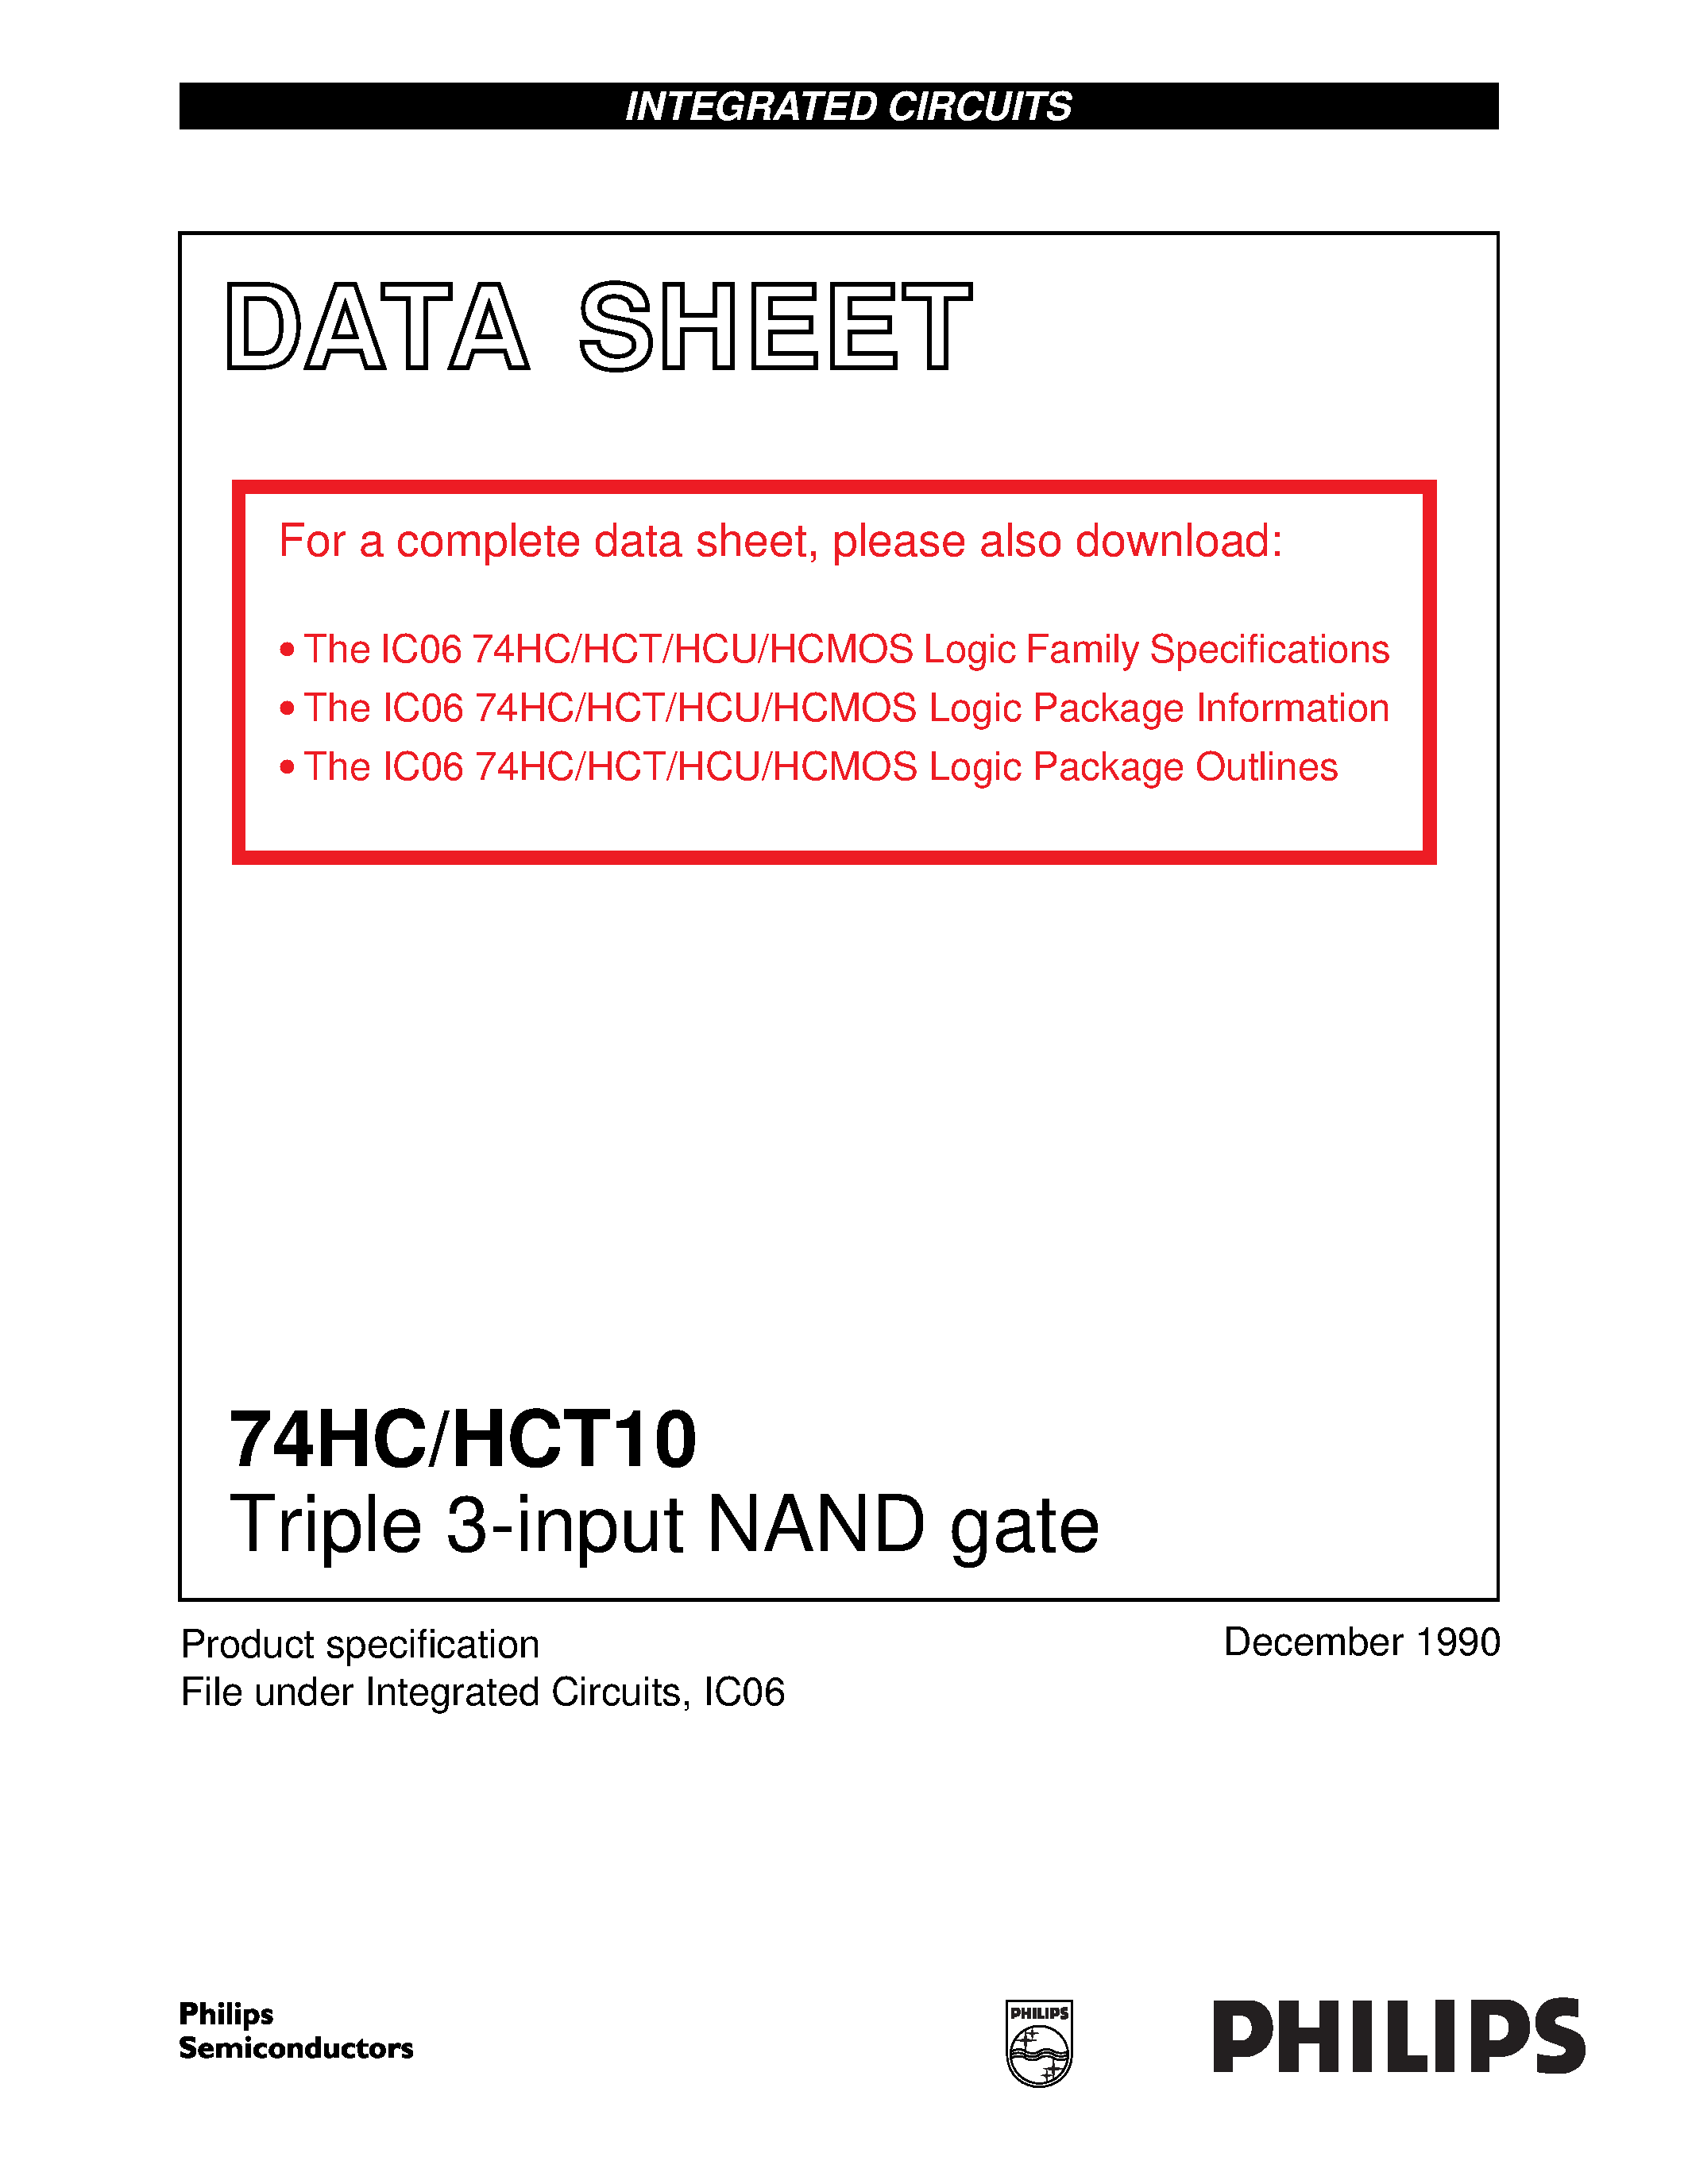 Даташит 74HCT10 - Triple 3-input NAND gate страница 1